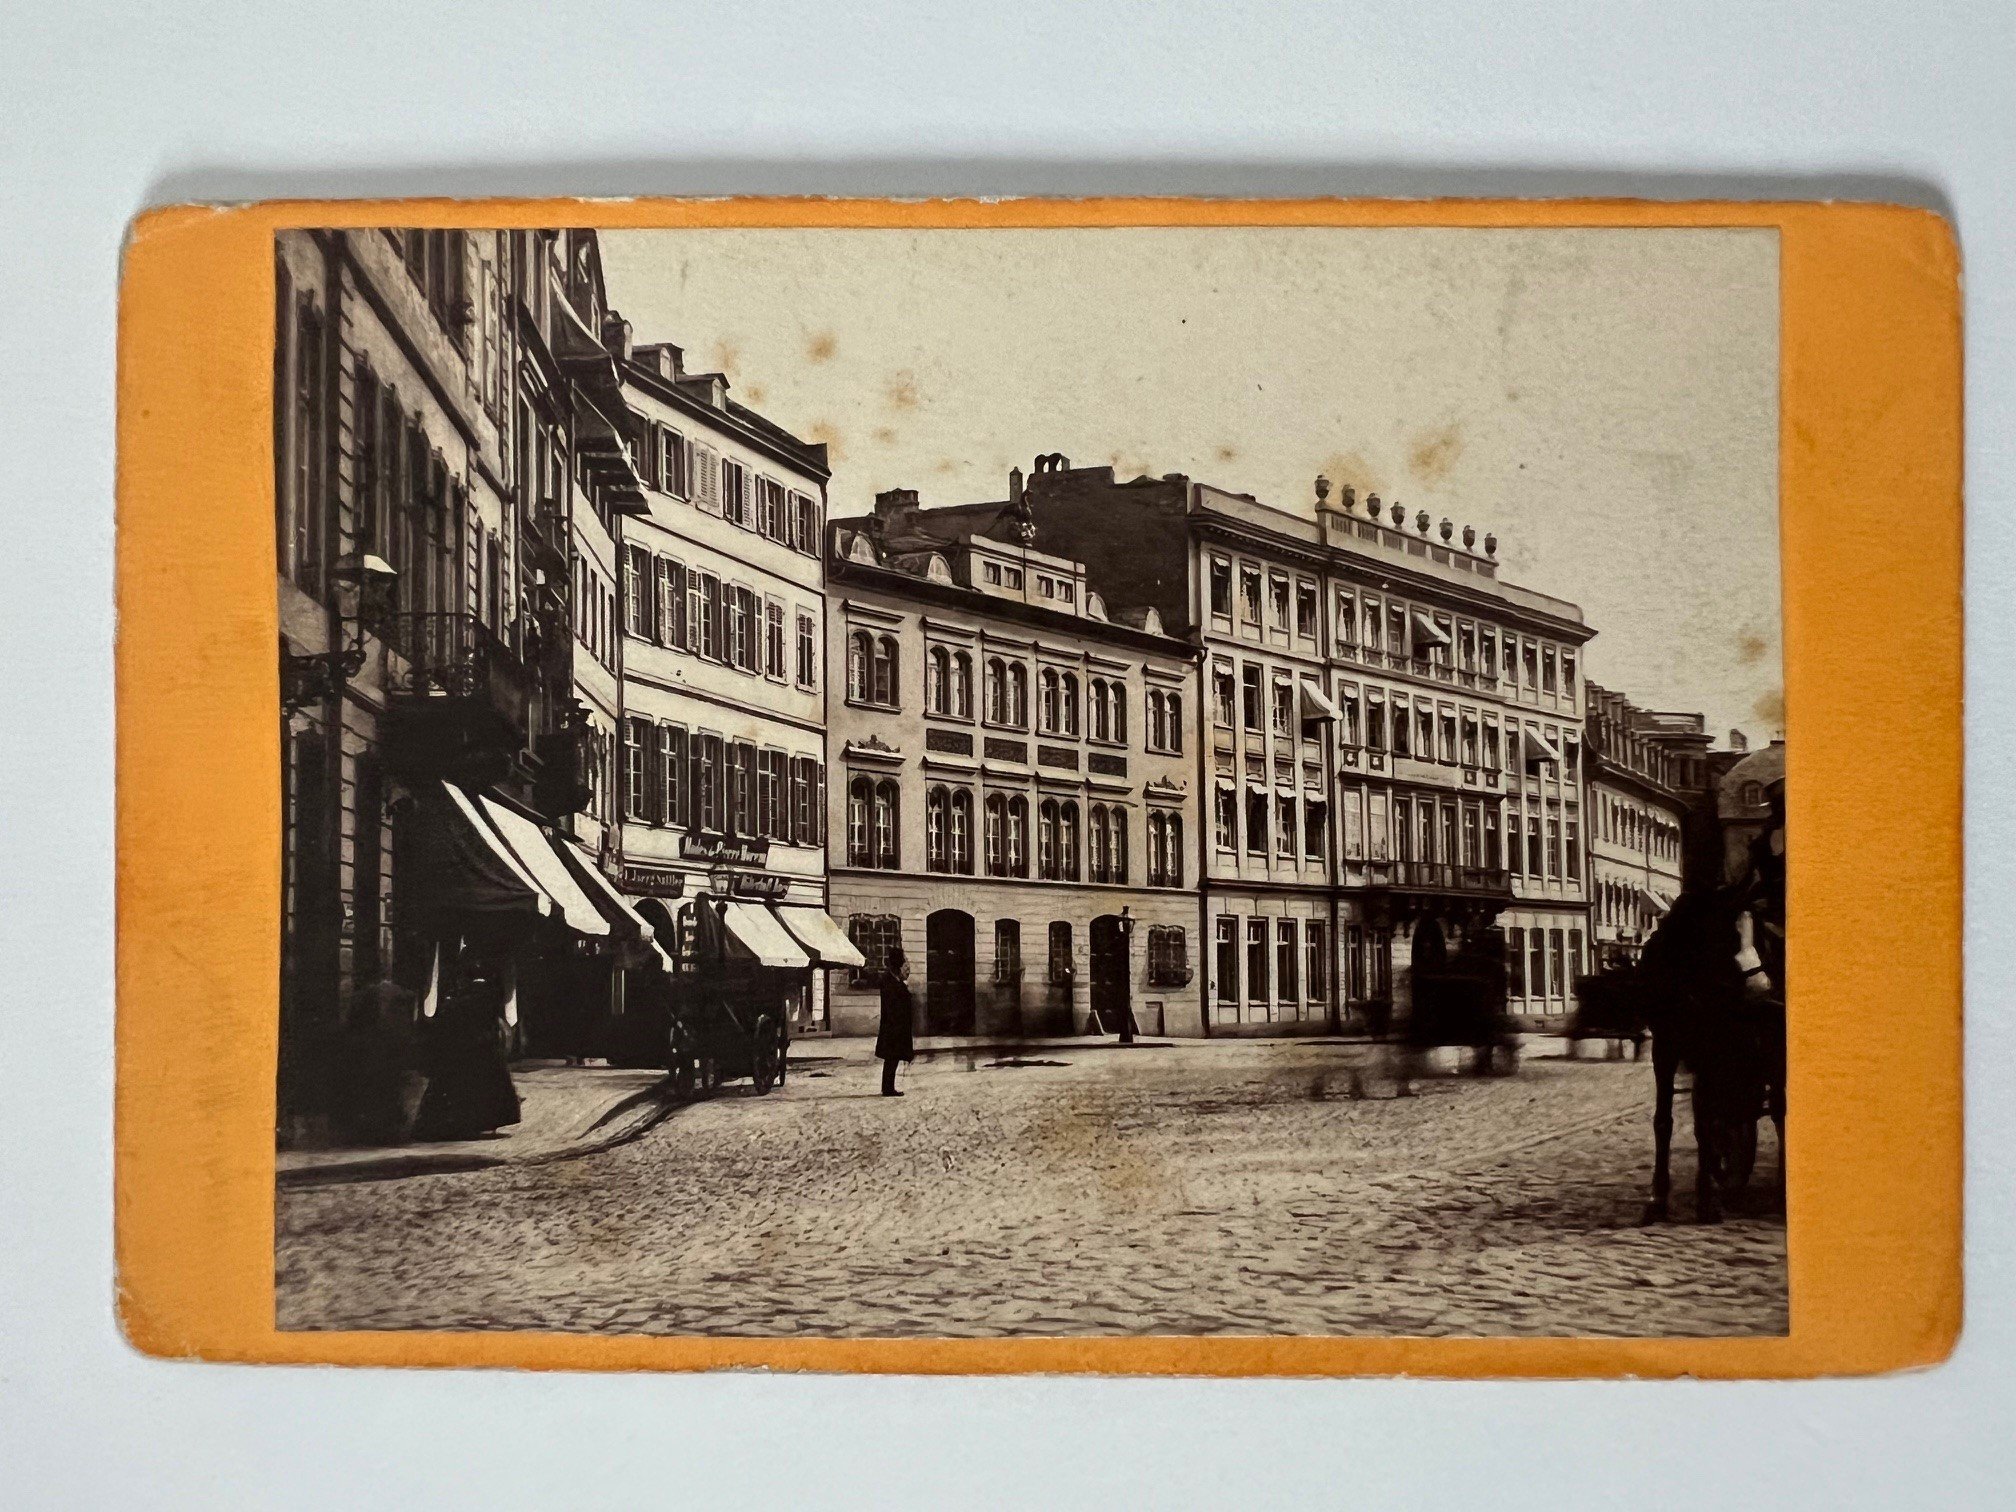 CdV, Theodor Creifelds, Frankfurt, Nr. 284, Englischer Hof, ca. 1872. (Taunus-Rhein-Main - Regionalgeschichtliche Sammlung Dr. Stefan Naas CC BY-NC-SA)